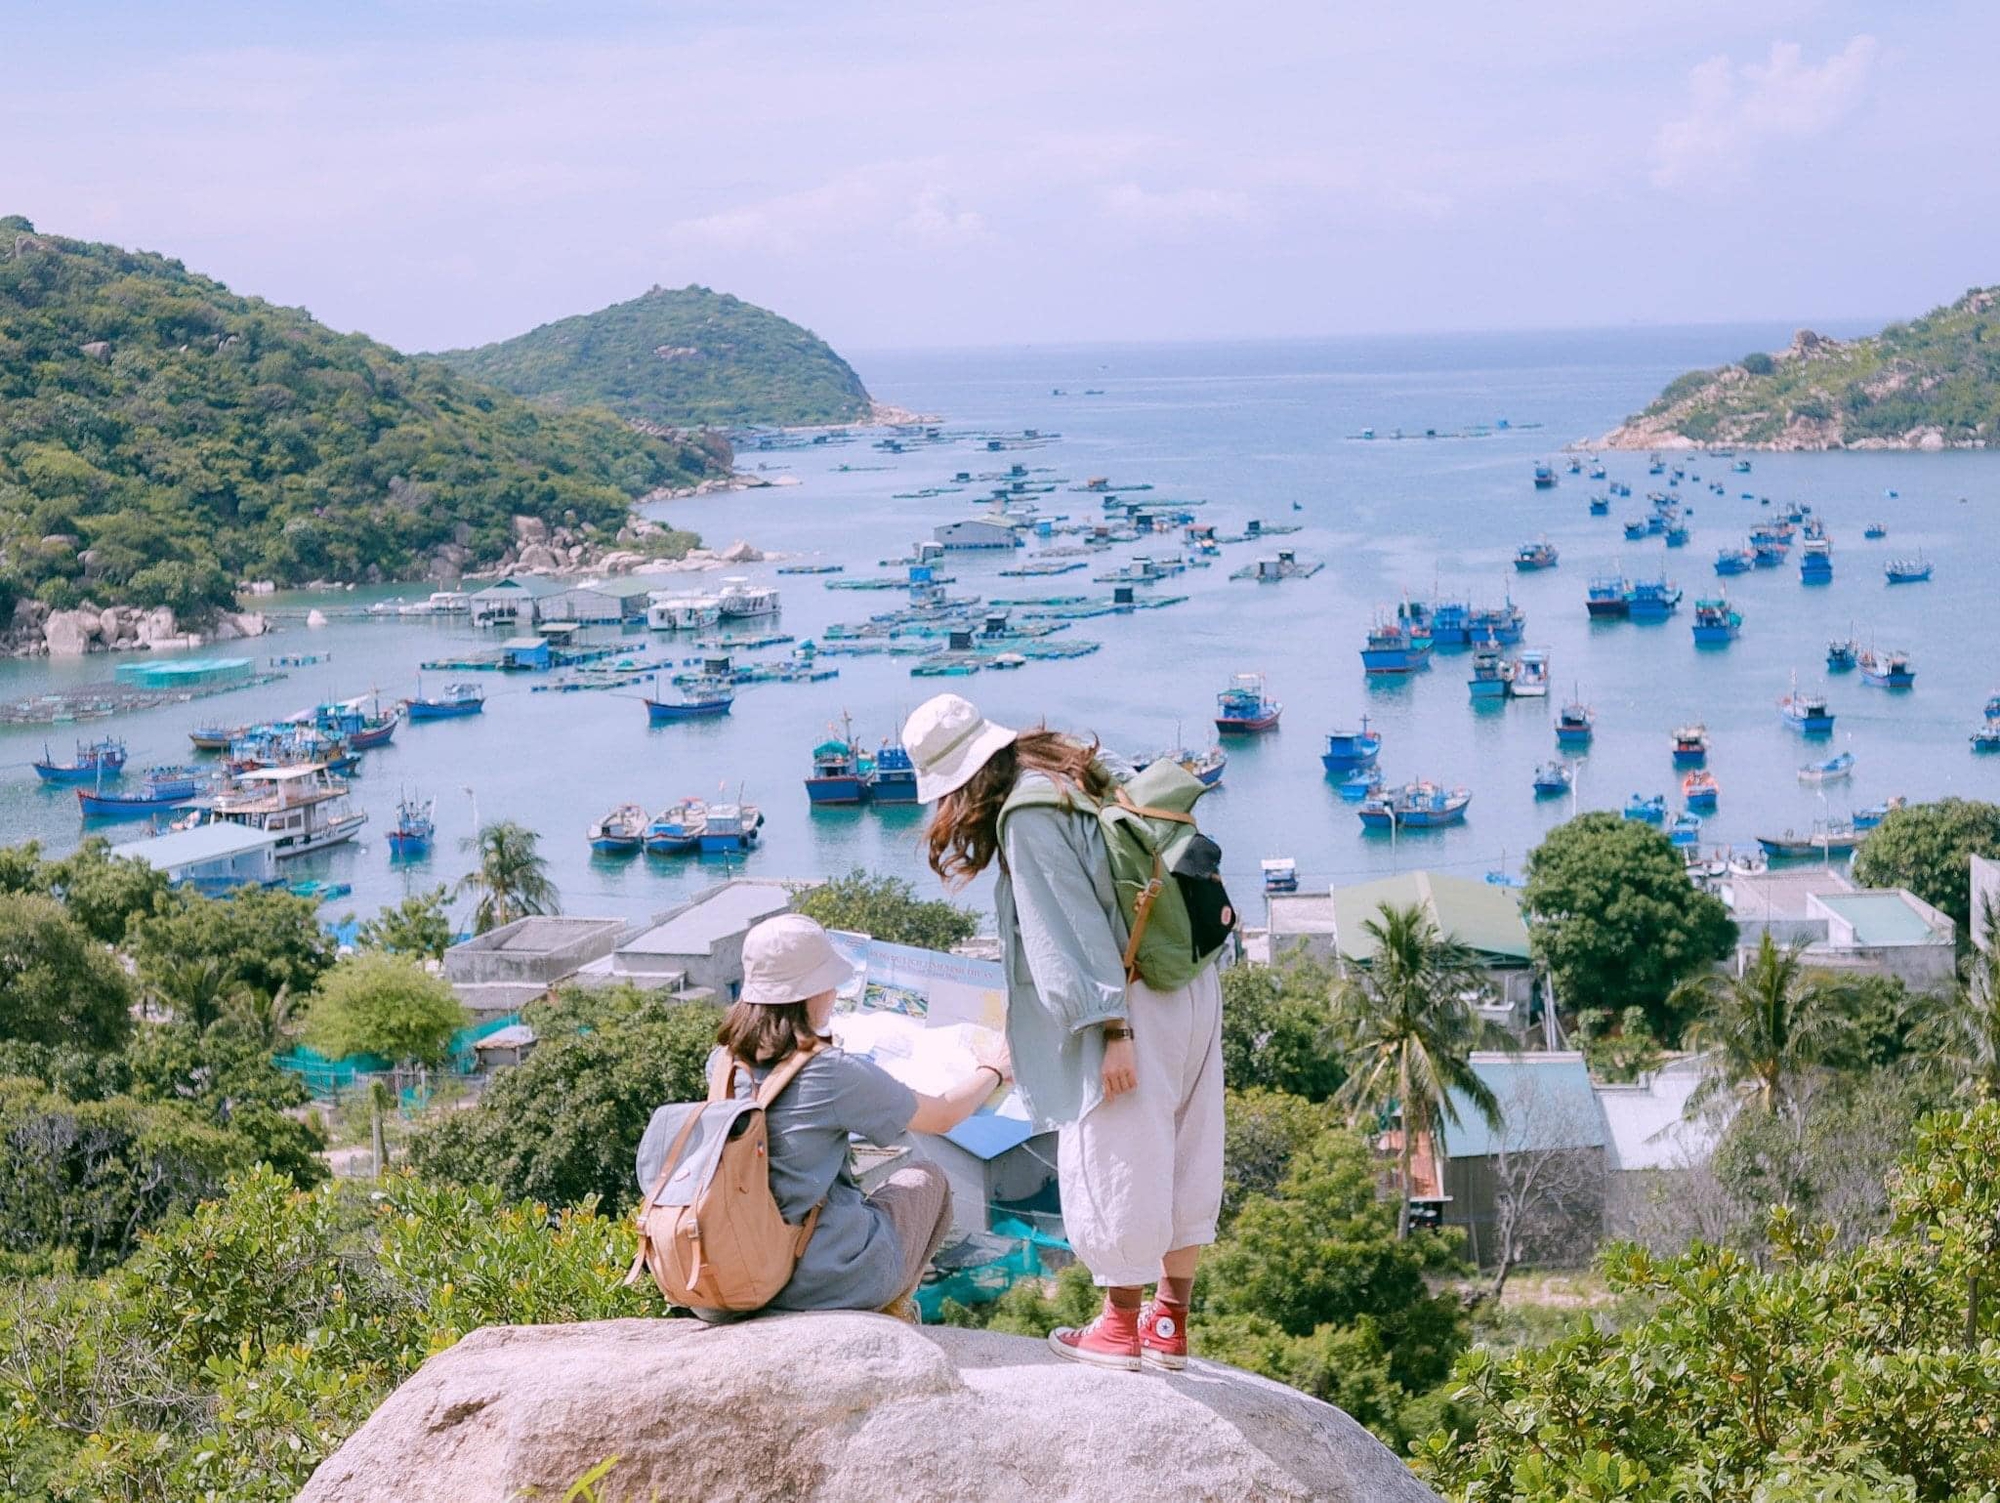 Tết Nguyên đán du lịch ở vùng biển Ninh Thuận vừa hưởng thời tiết trong lành, vừa thưởng cảnh đẹp mà lại vắng khách - Ảnh 9.